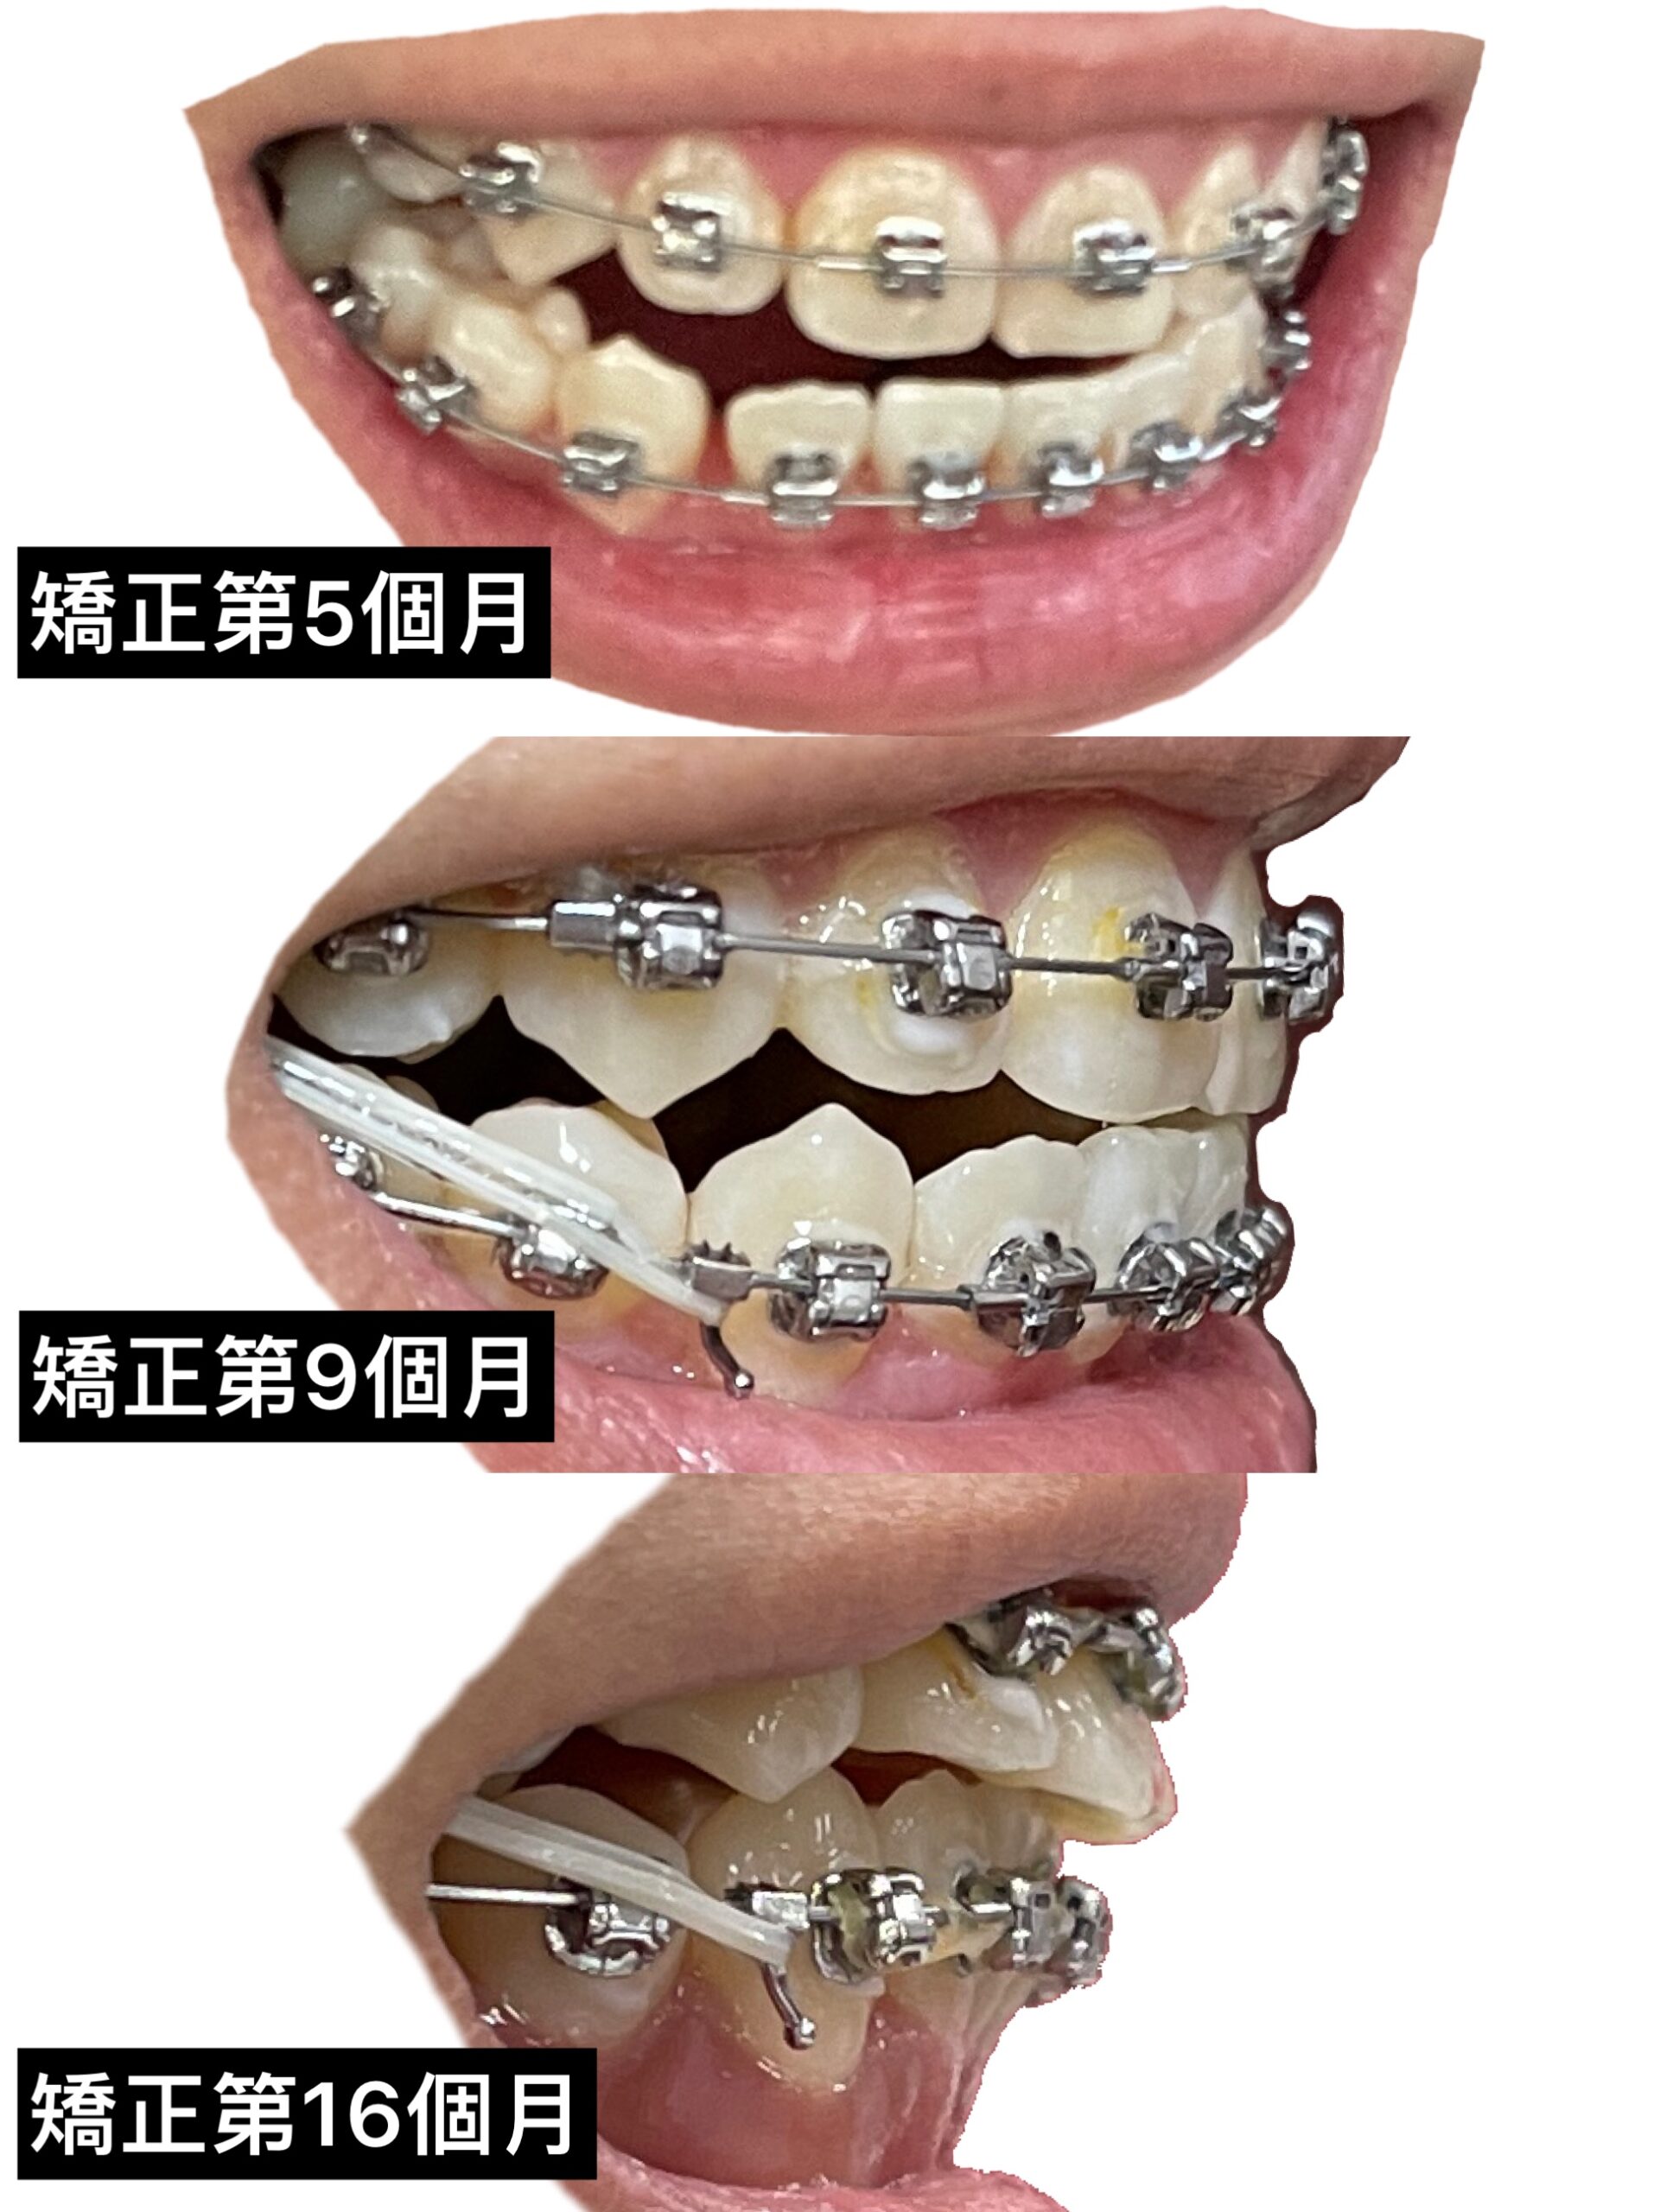 矯正牙齒側面紀錄